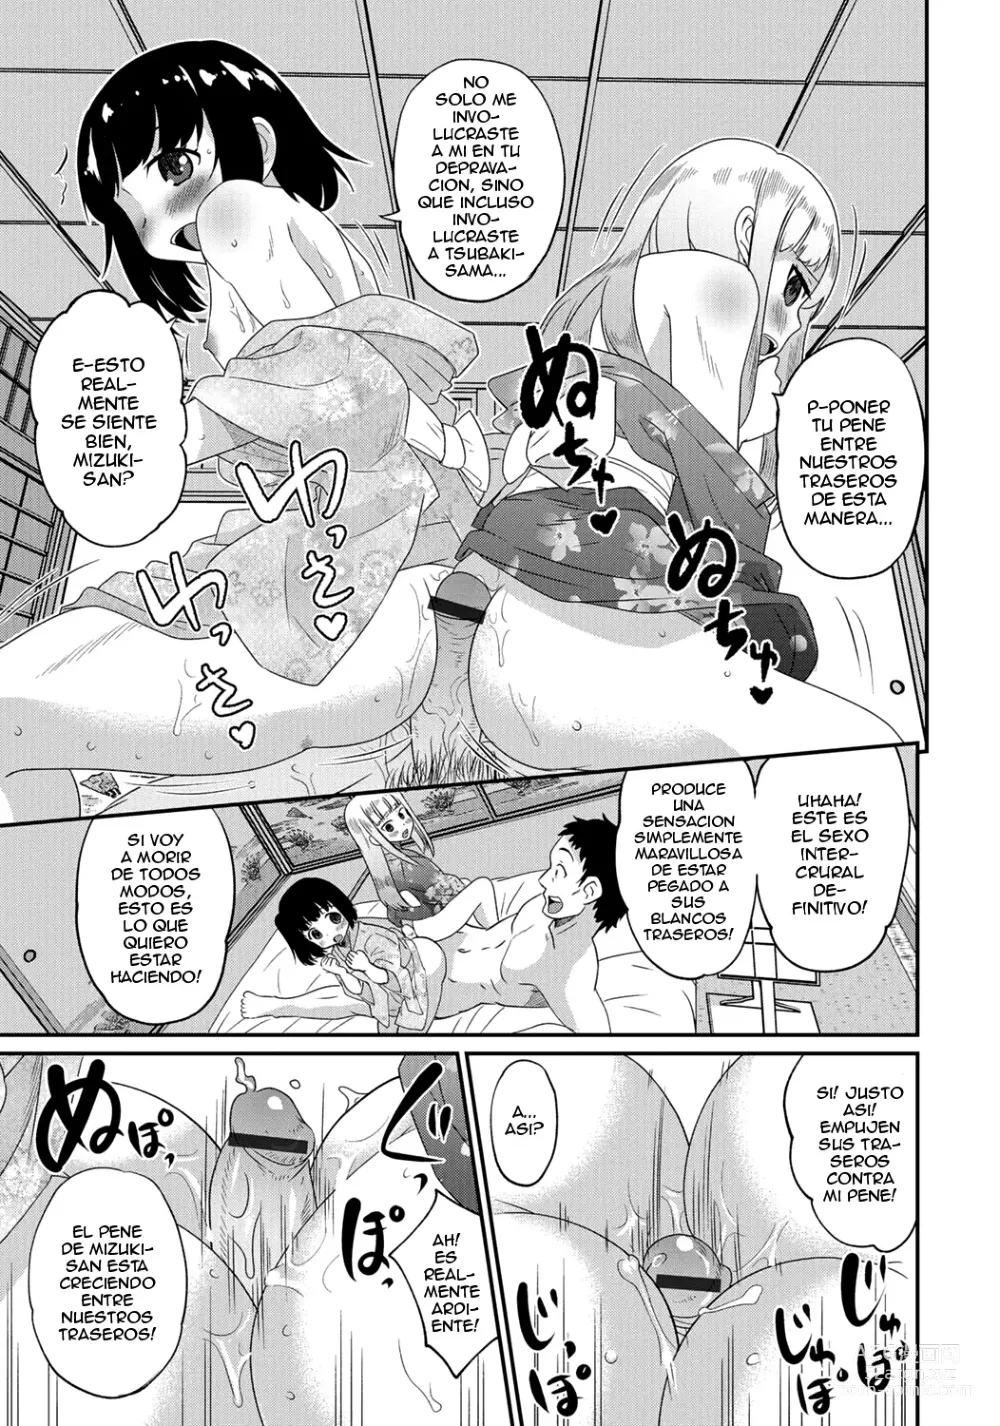 Page 10 of manga Gekkan Web Otoko no Ko-llection! S Vol. 06